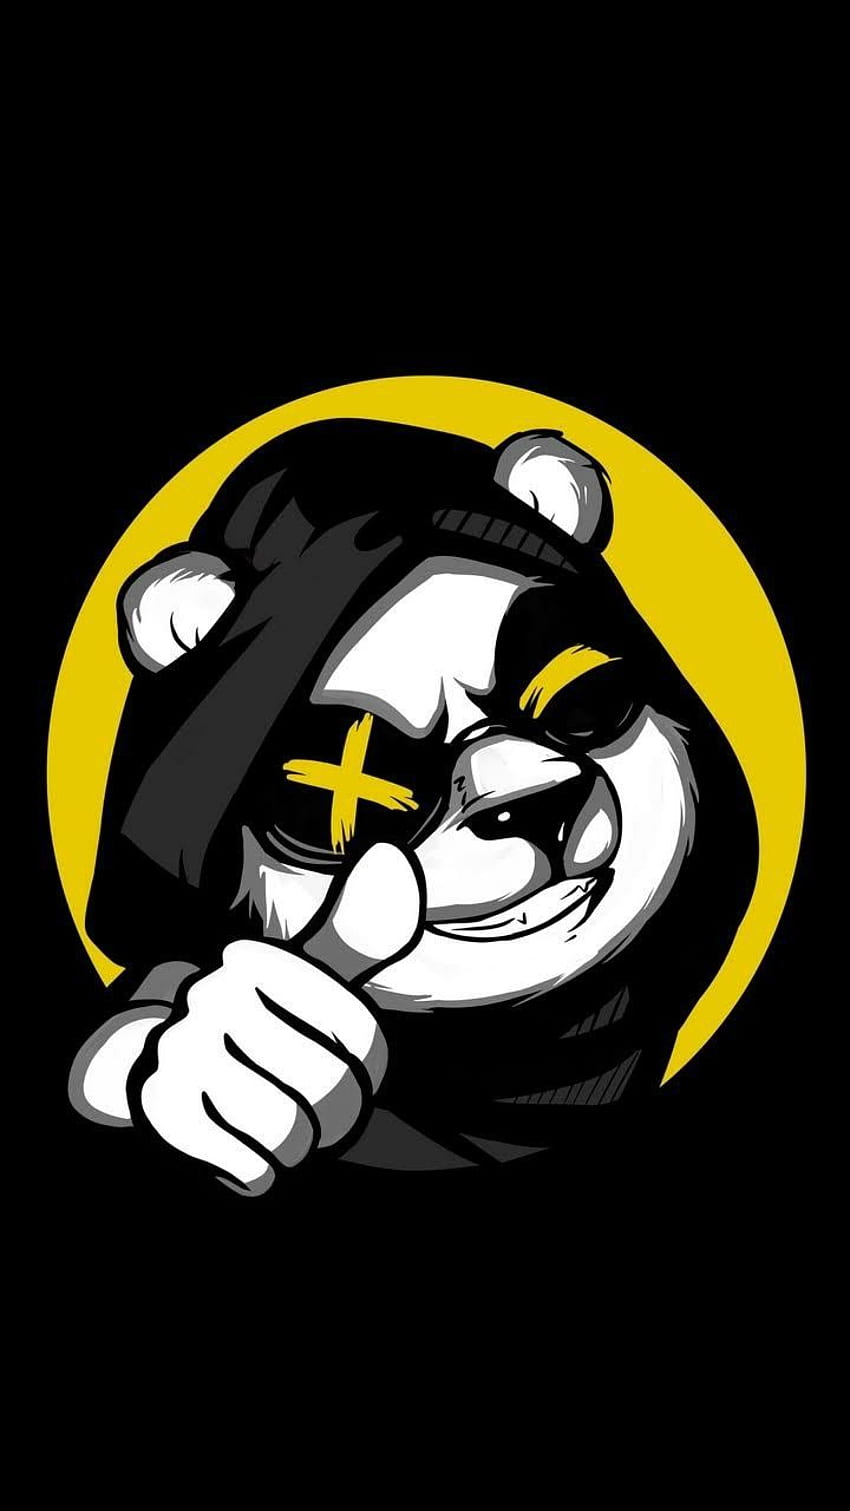 Kpinero on 56. Panda art, Graffiti characters, Logo design art HD phone wallpaper